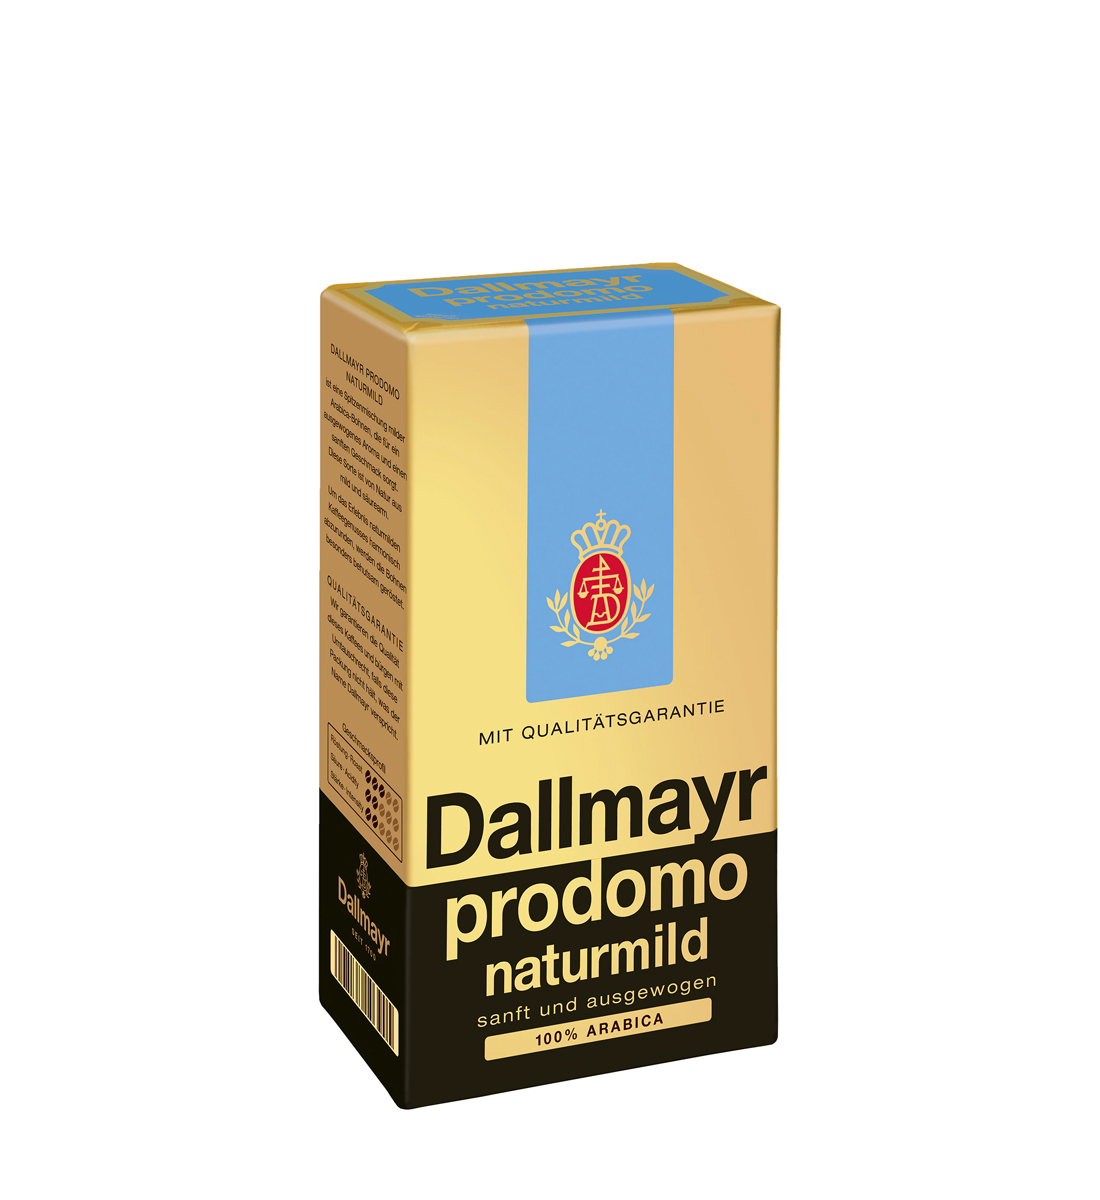 Dallmayr Prodomo Naturmild cafea macinata 500 g 500